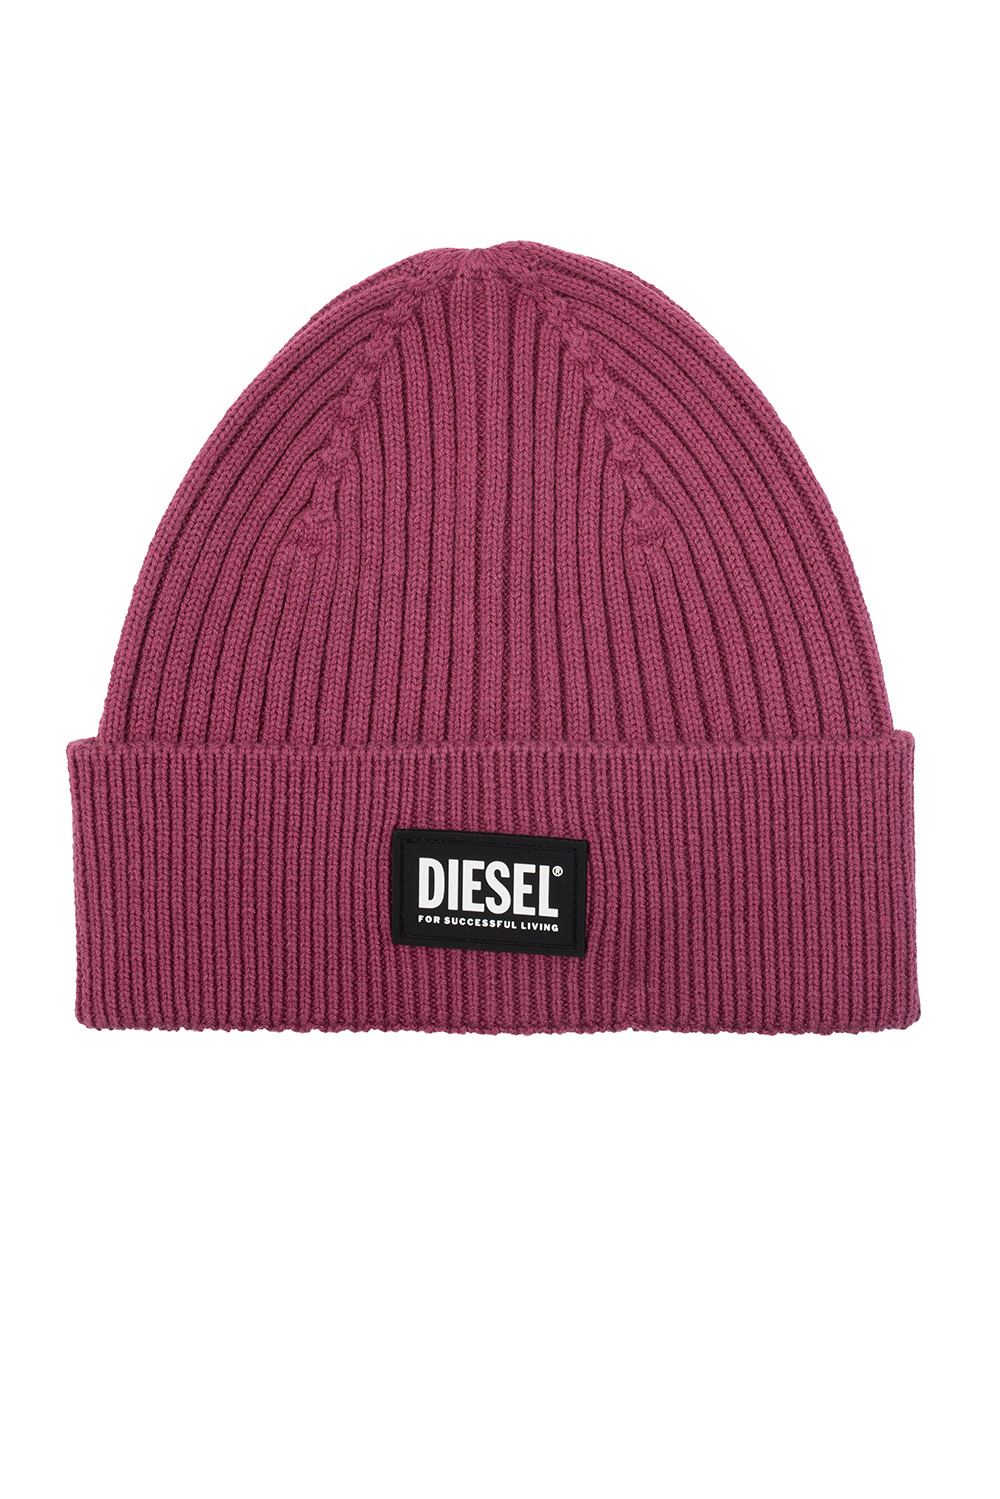 Diesel ‘K-Coder’ hat with logo